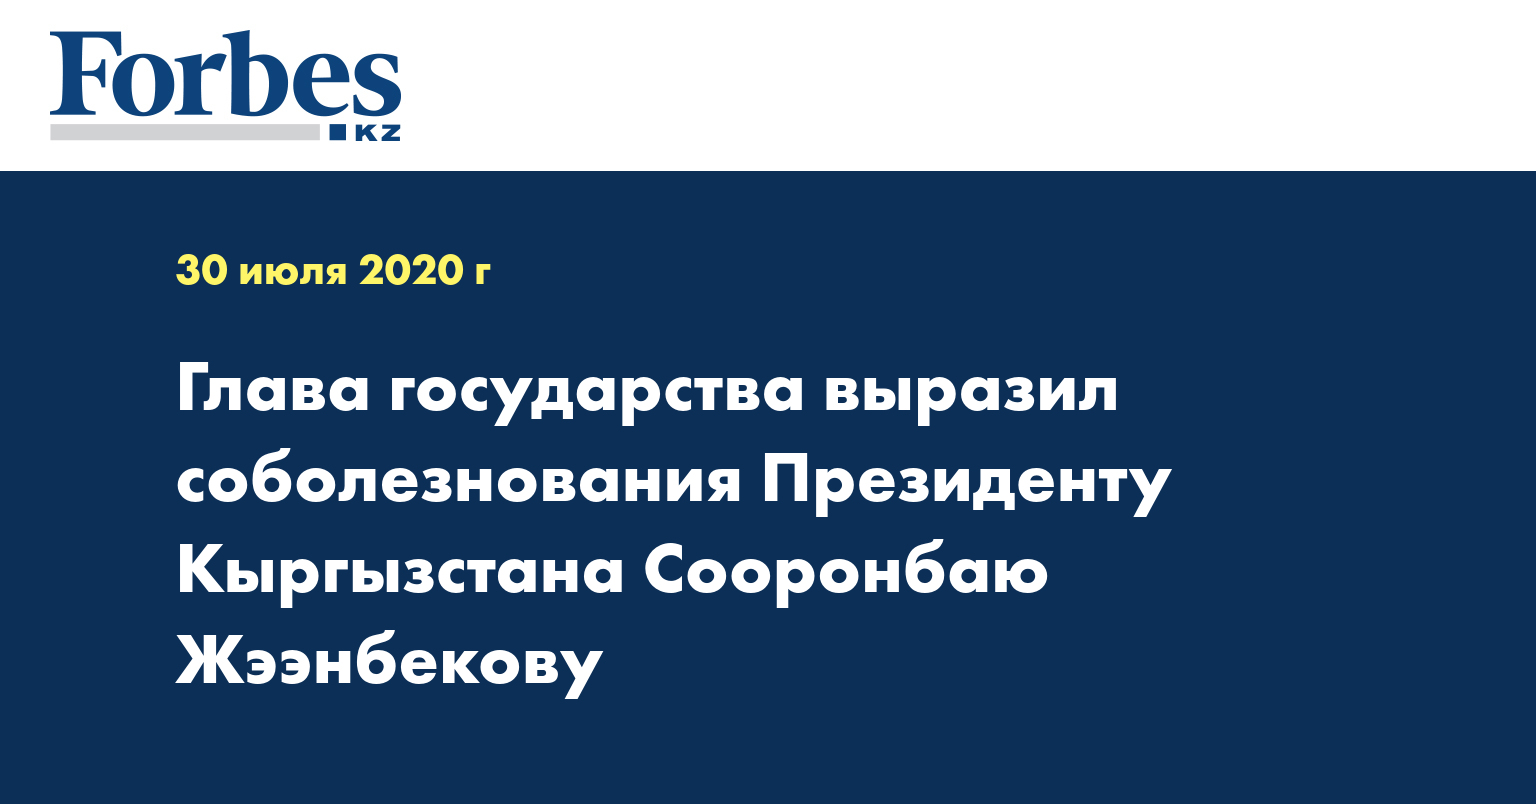 Глава государства выразил соболезнования Президенту Кыргызстана Сооронбаю Жээнбекову